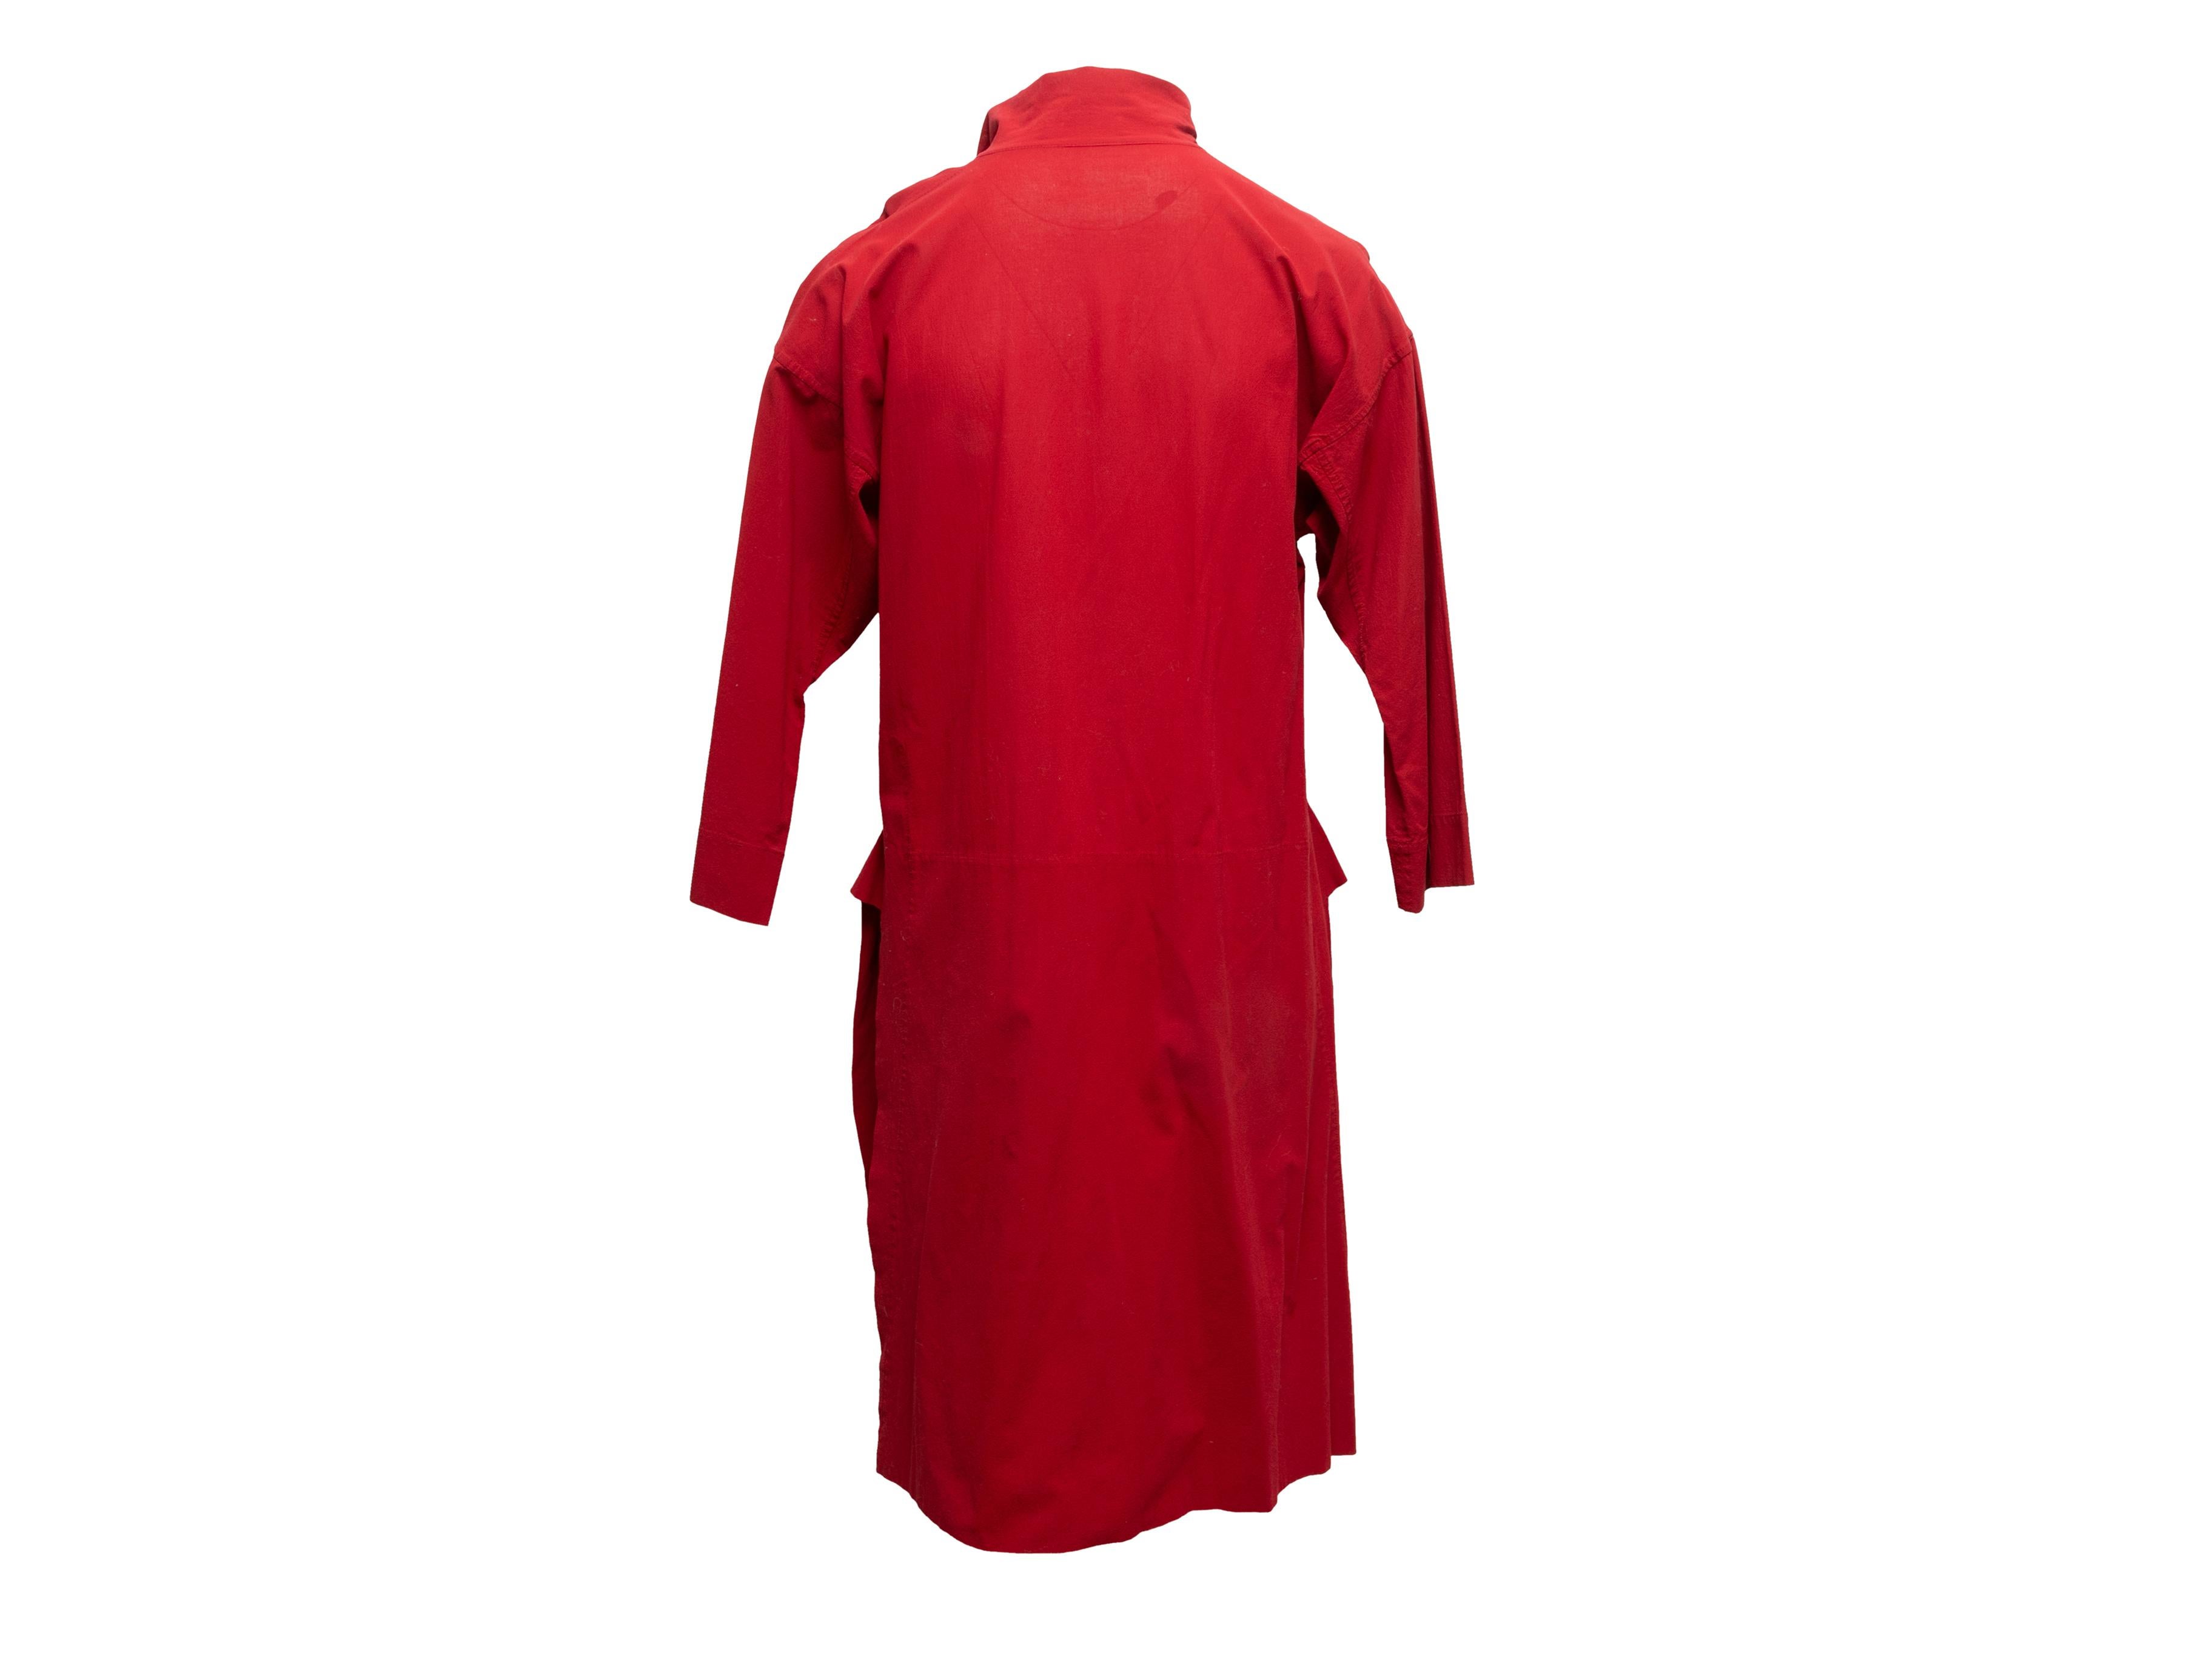 Rotes knielanges Tunikakleid im Vintage-Stil von Issey Miyake. Spitz zulaufender Kragen. Schlitze an den Seiten. Einzelne Tasche. Vordere Knopfverschlüsse. 40